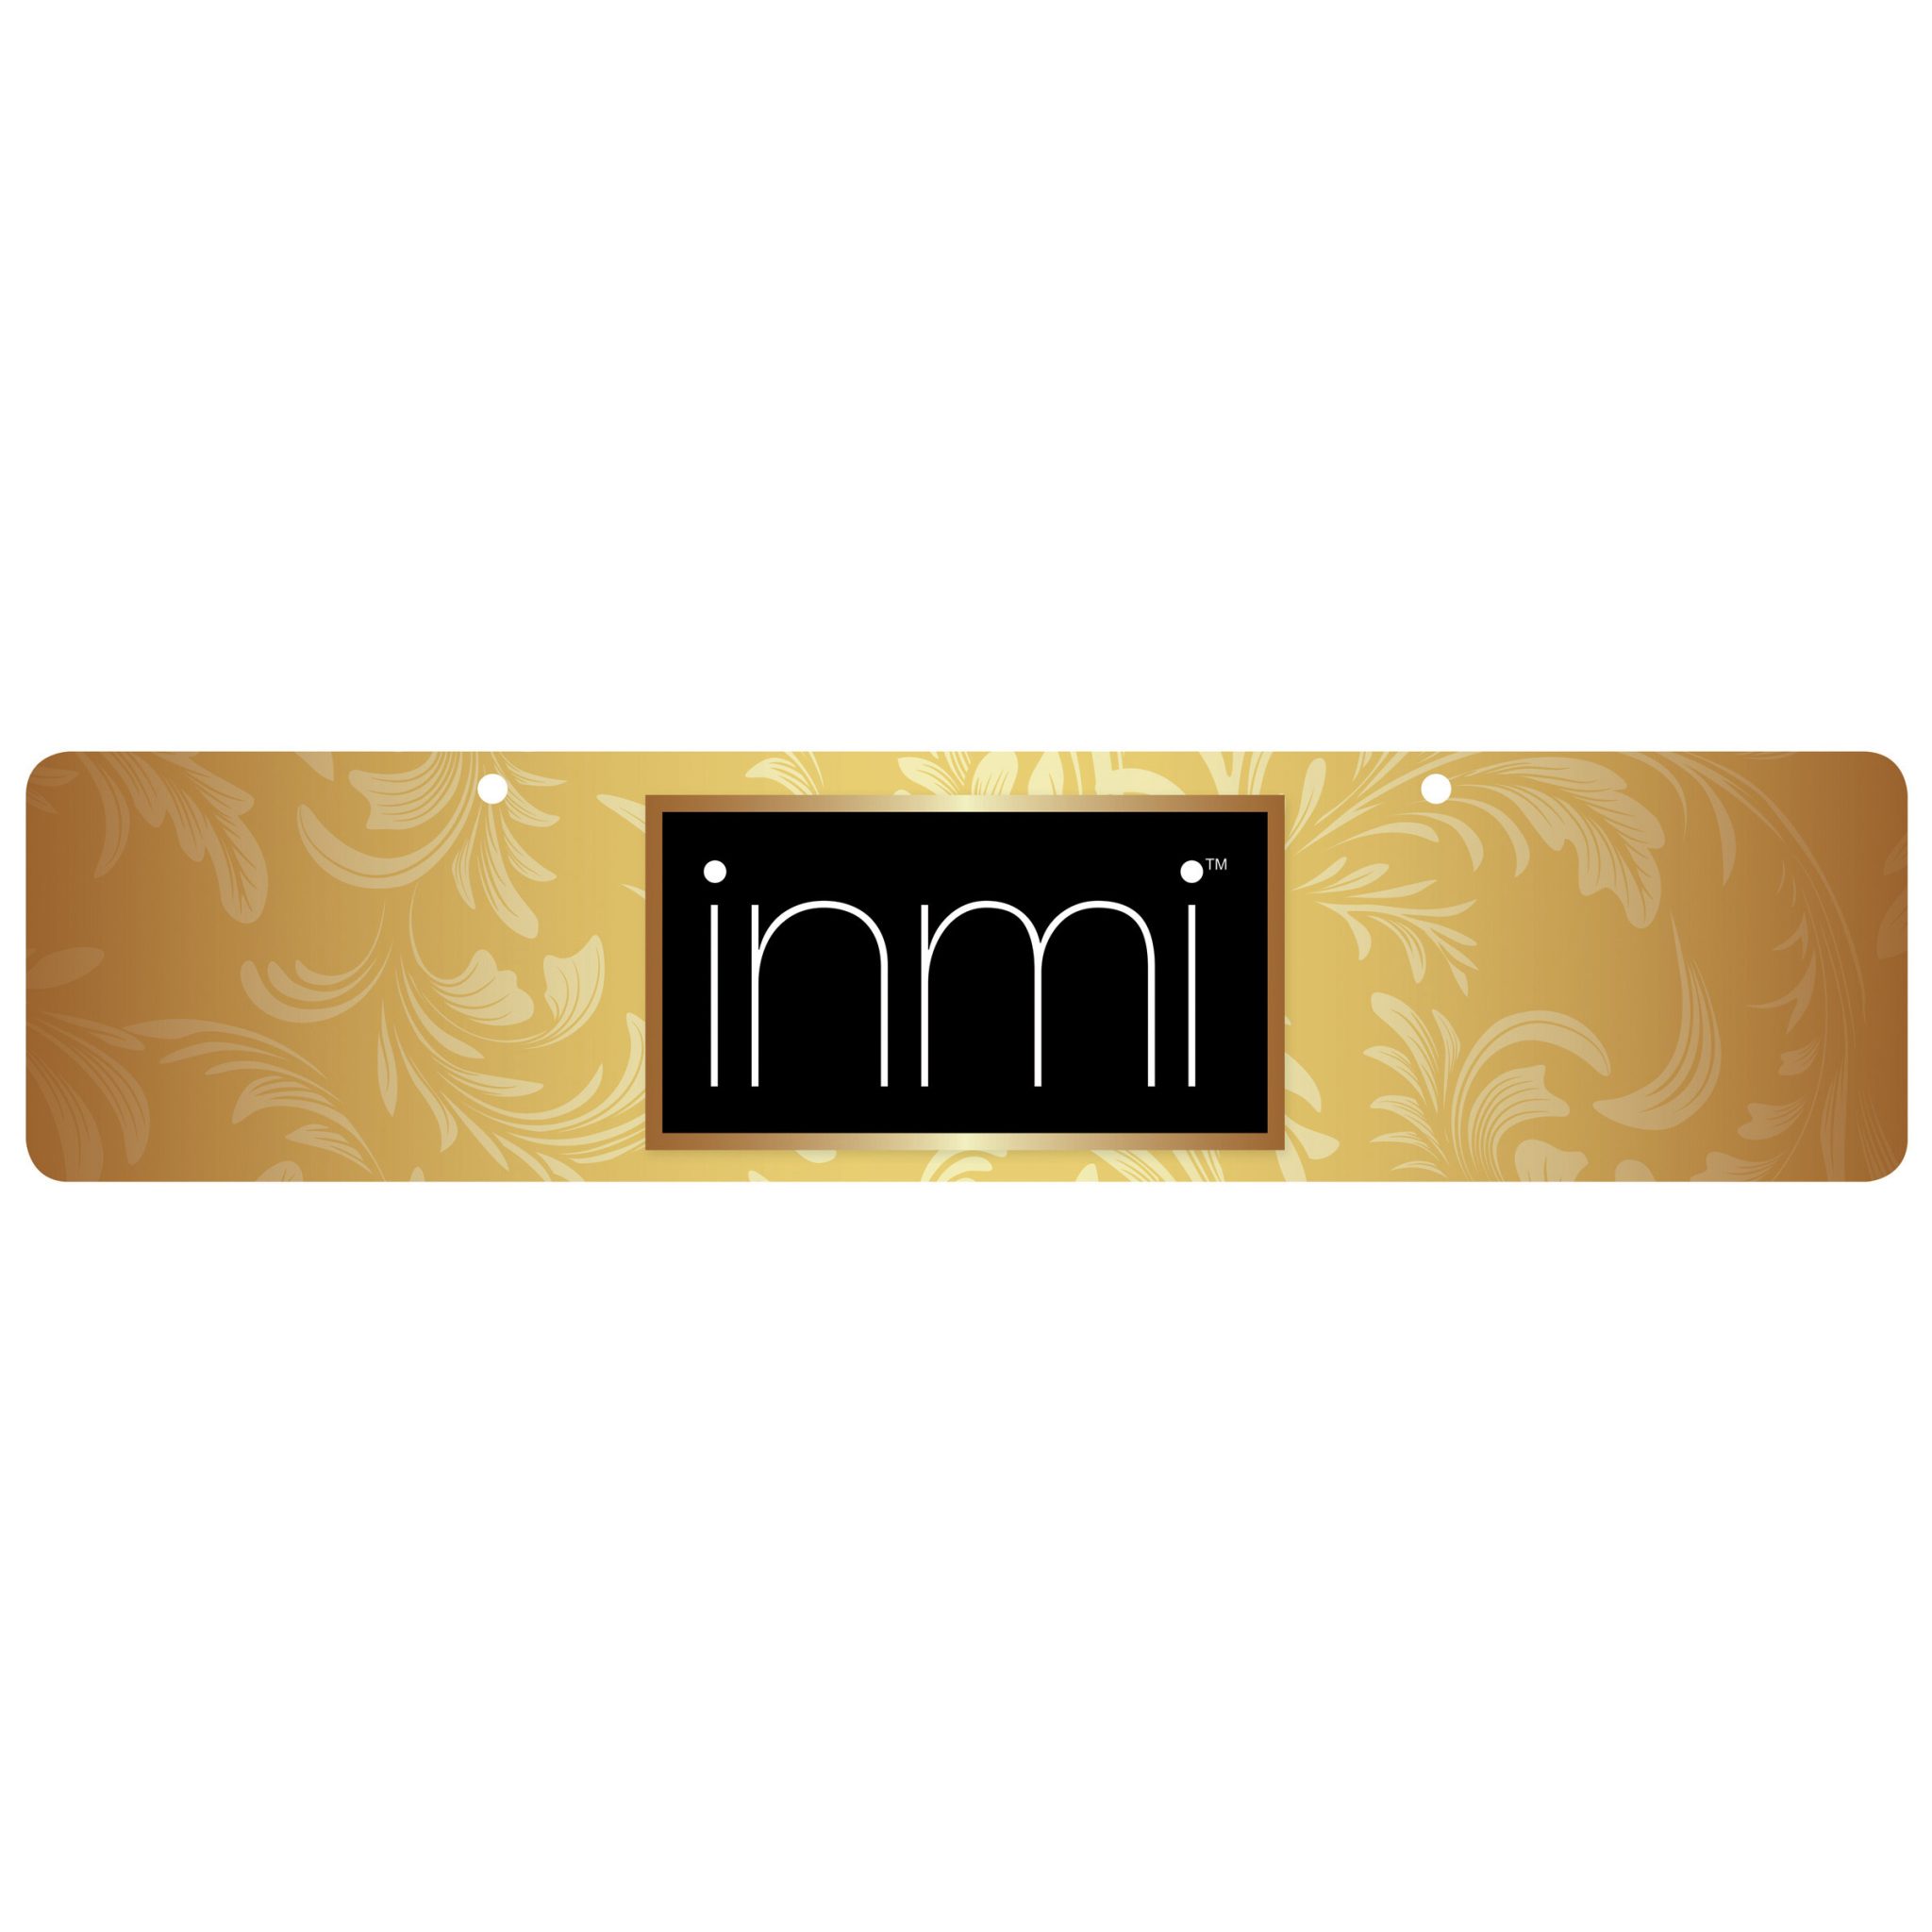 INMI Display Sign